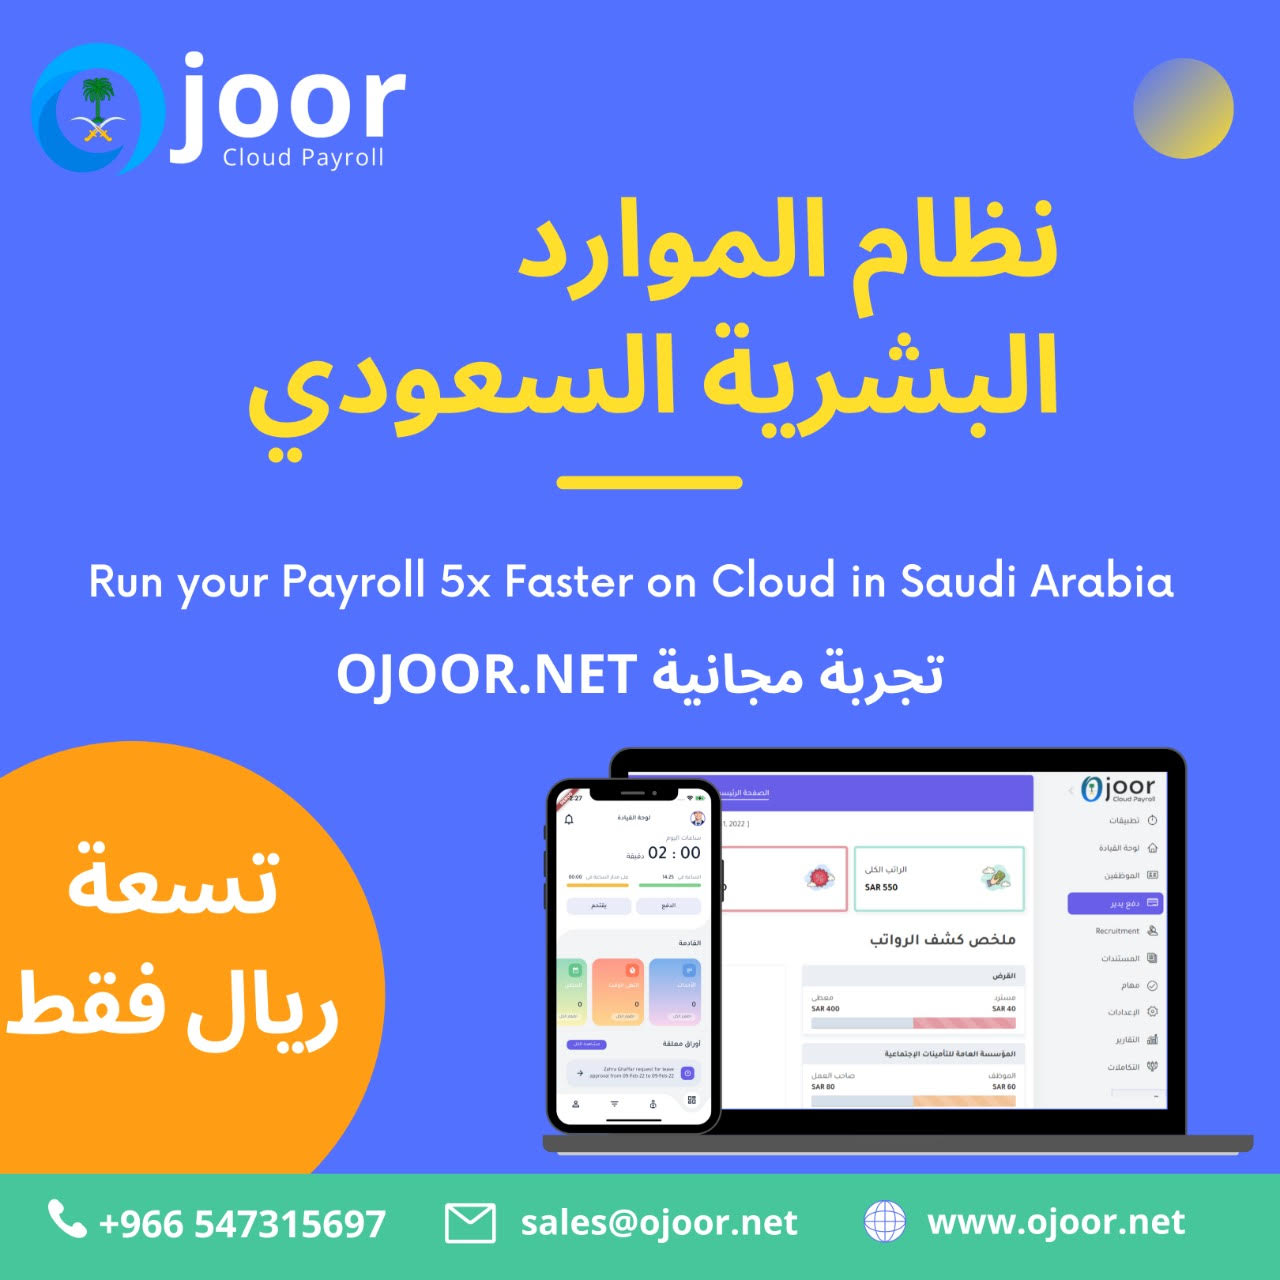 كيفية معالجة رواتب الموظفين وكشوف المرتبات على شبكة الإنترنت بتنسيق برامج رواتب سعودي ؟